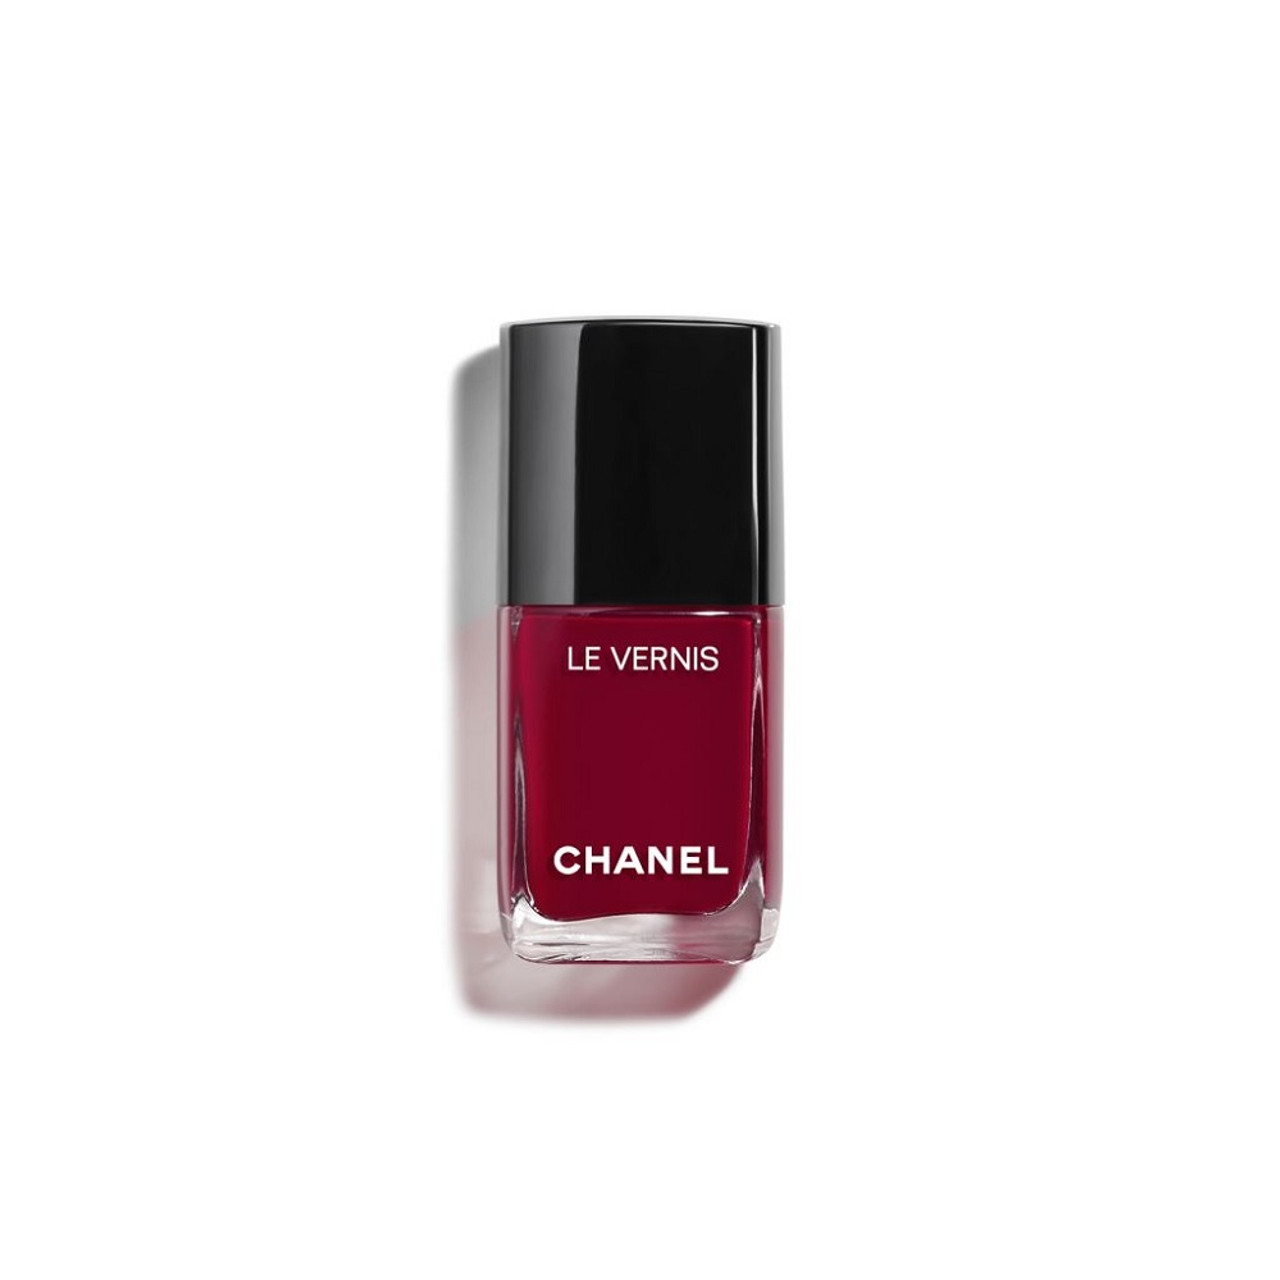 Le Vernis Longwear Nail Colour - 08 Pirate by Chanel for Women - 0.4 oz  Nail Polish